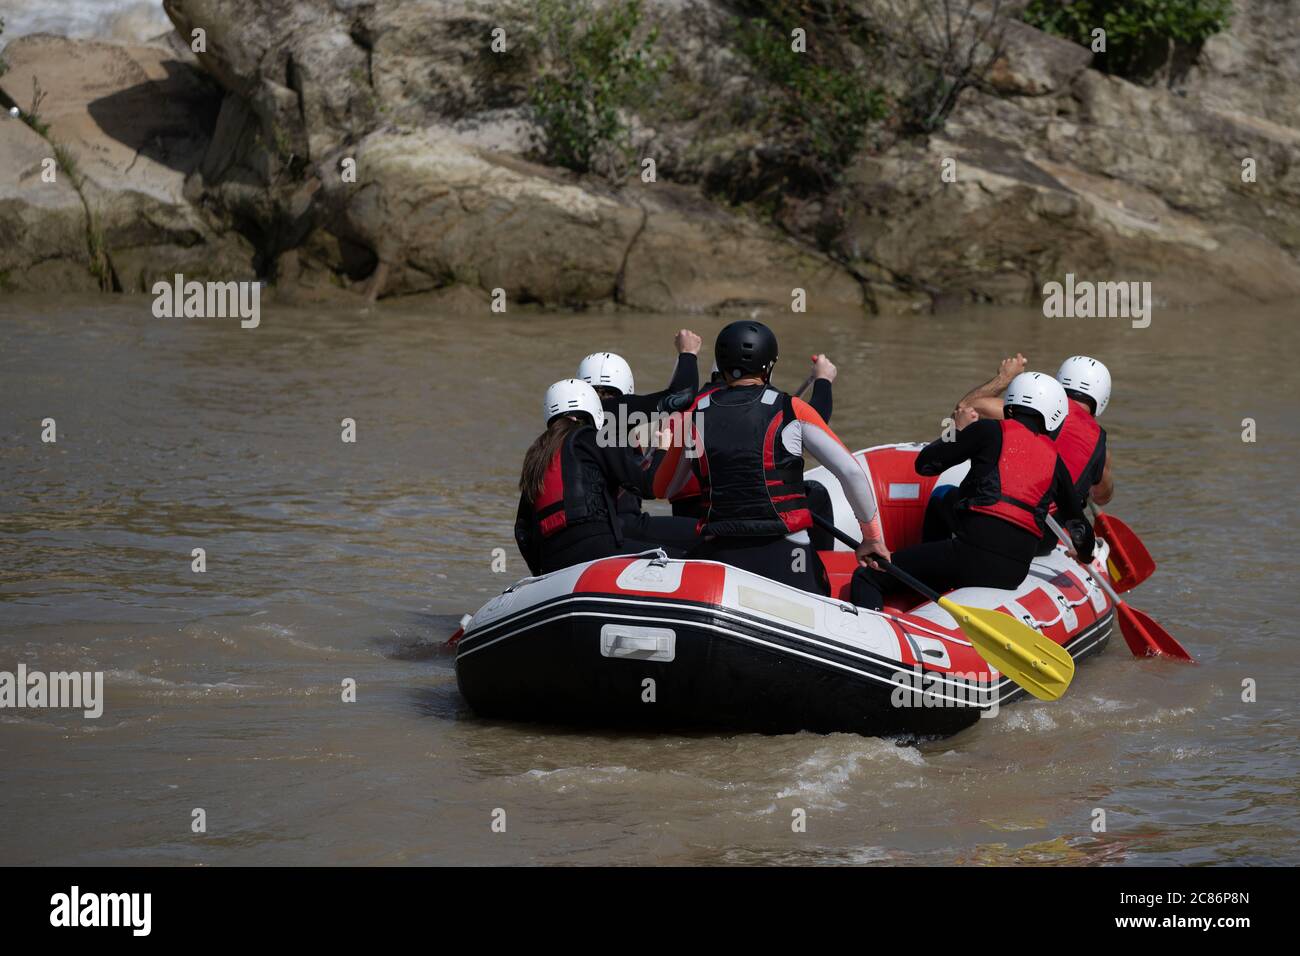 Die Teammitglieder rudern im Rafting Boot den trüben Fluss hinunter während der Sommerzeit. Komplette Ausrüstung mit Helm enthalten Stockfoto